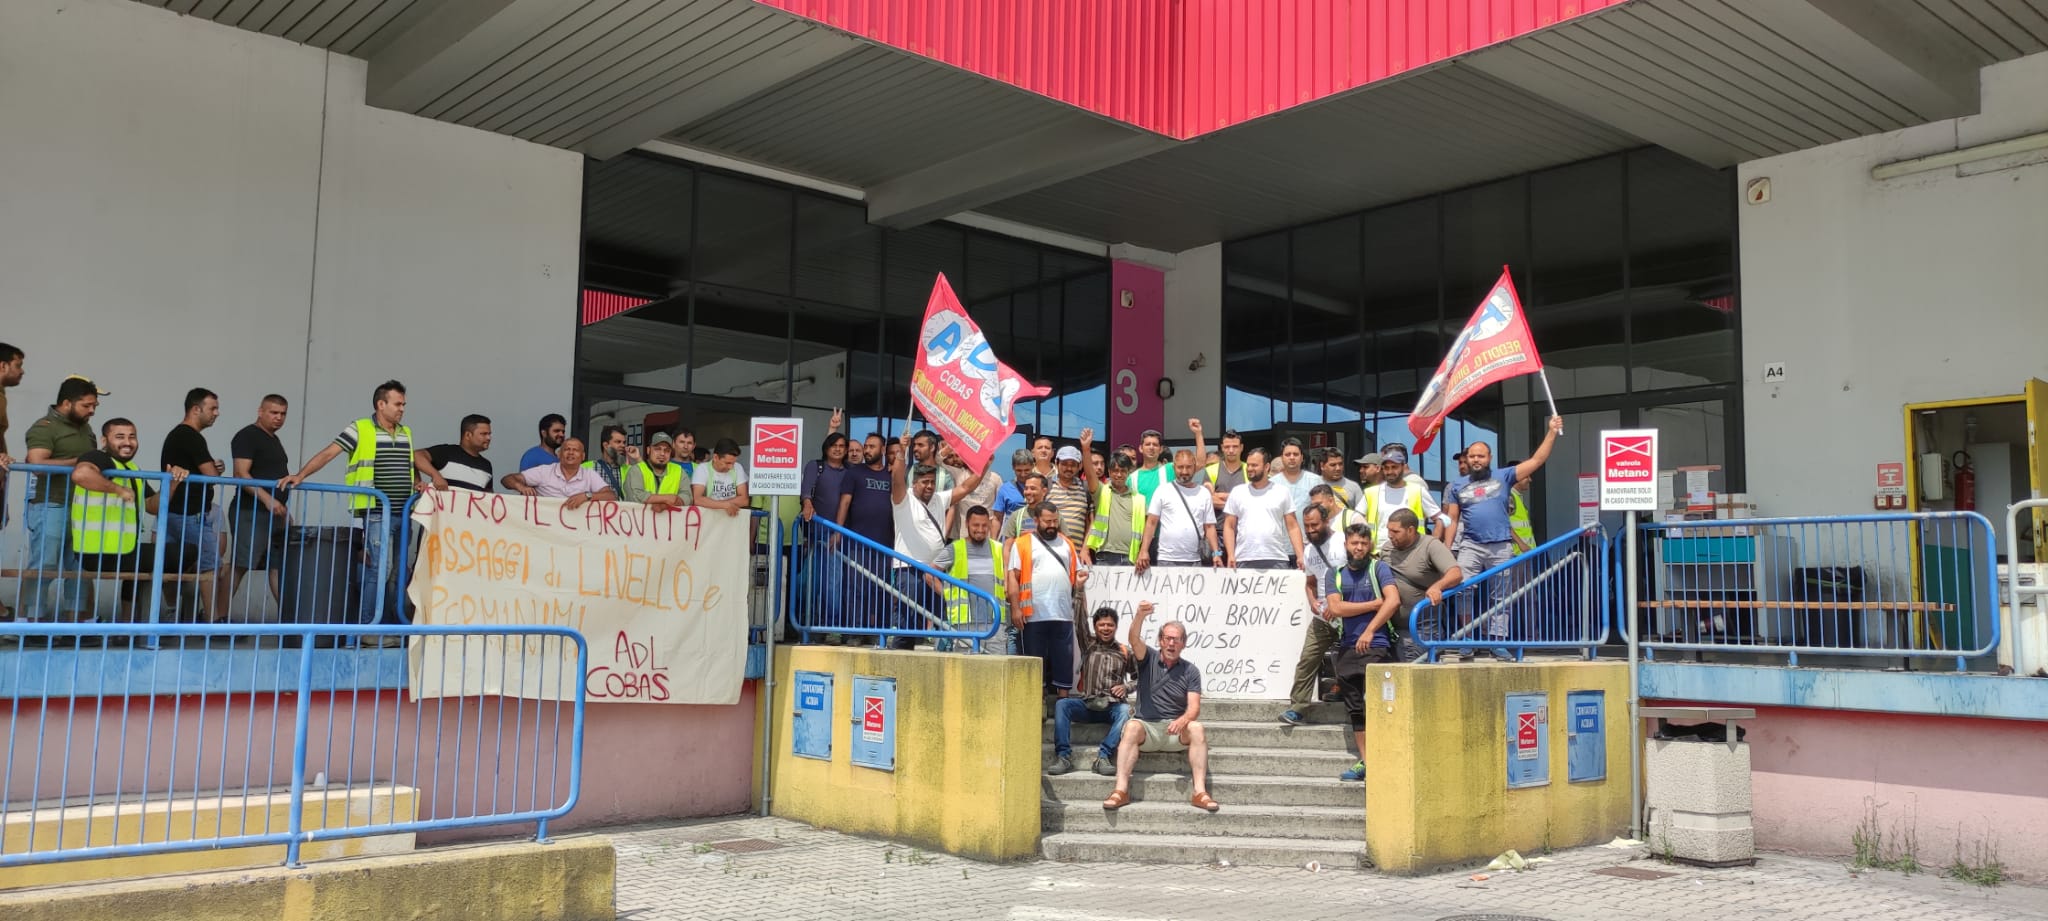 Sindacato di Base ADL Cobas - Padova - Continua lo sciopero in Tigotà